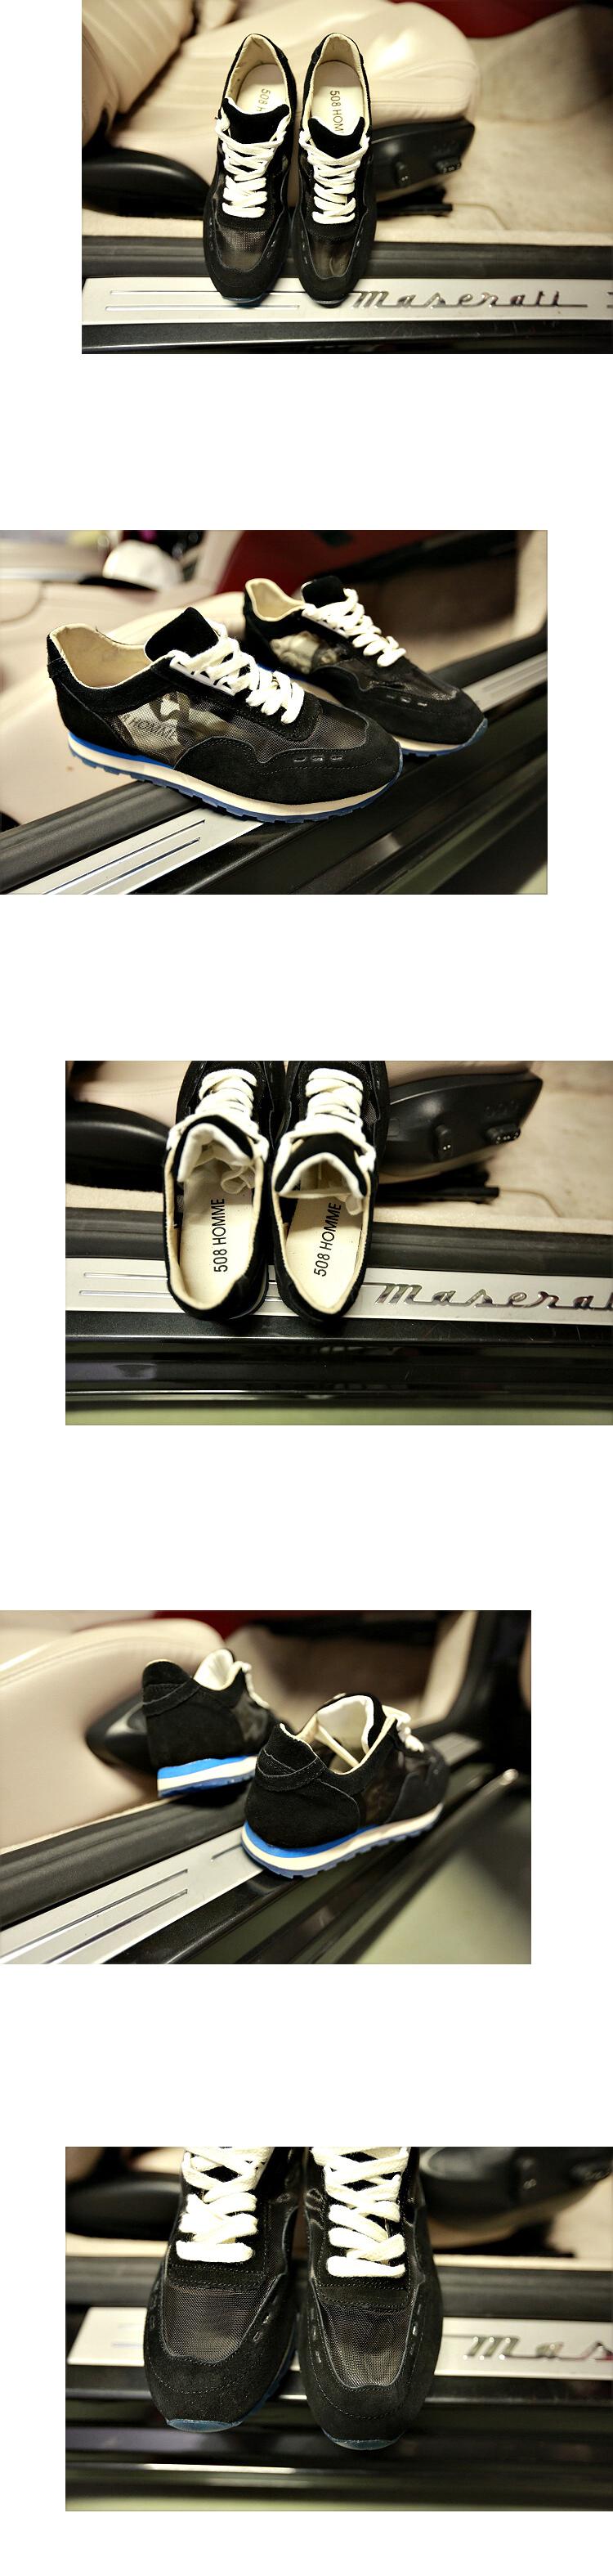 Mr.benyou 2014正品青年银色系潮流镂空休闲鞋 透气低帮纯色系带鞋子H508-X1081